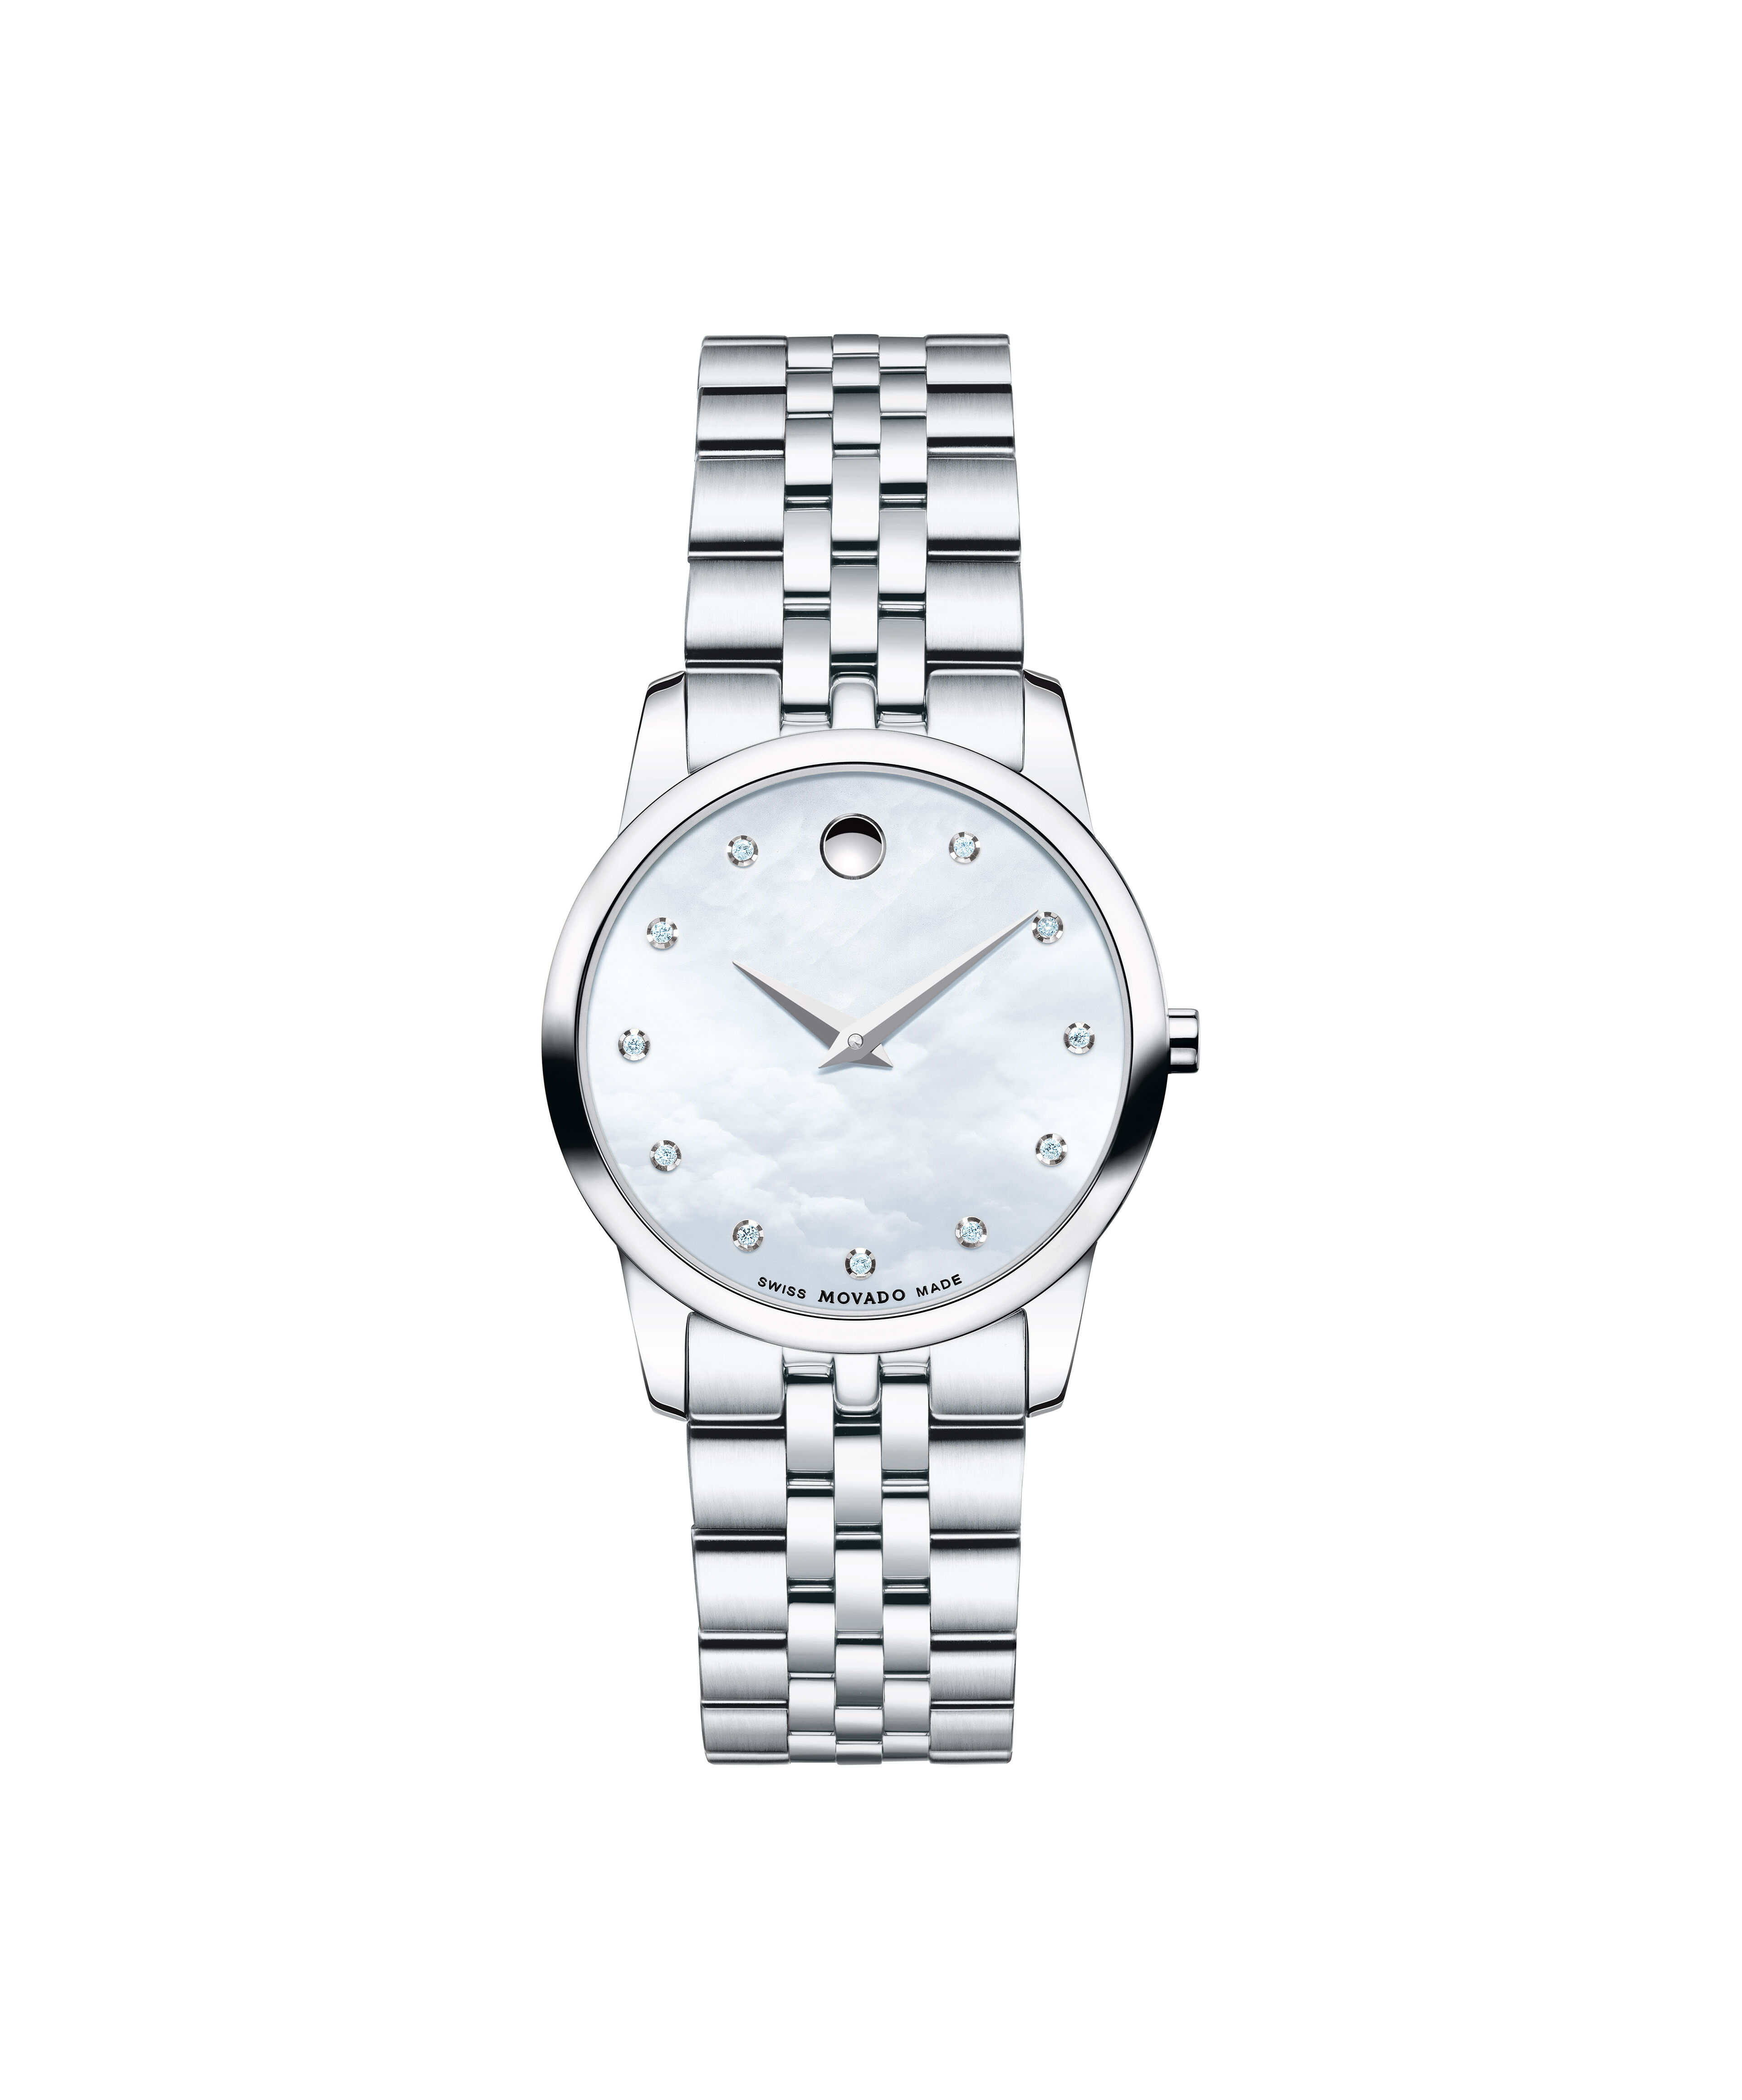 Luxury Imitation Rolex Watches